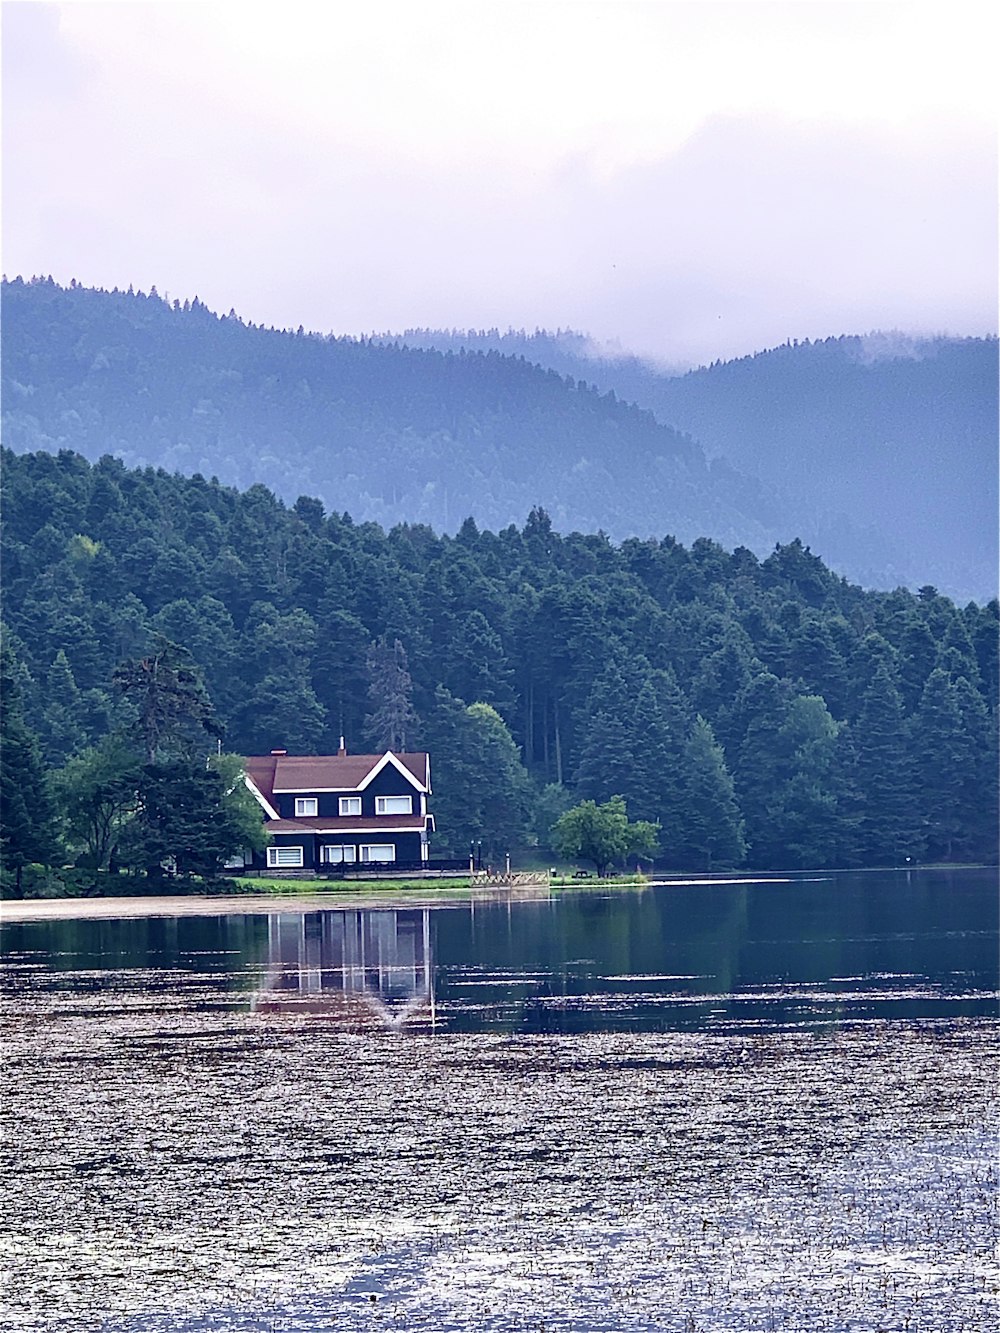 Casa de madera marrón en un lago cerca de Green Mountains durante el día